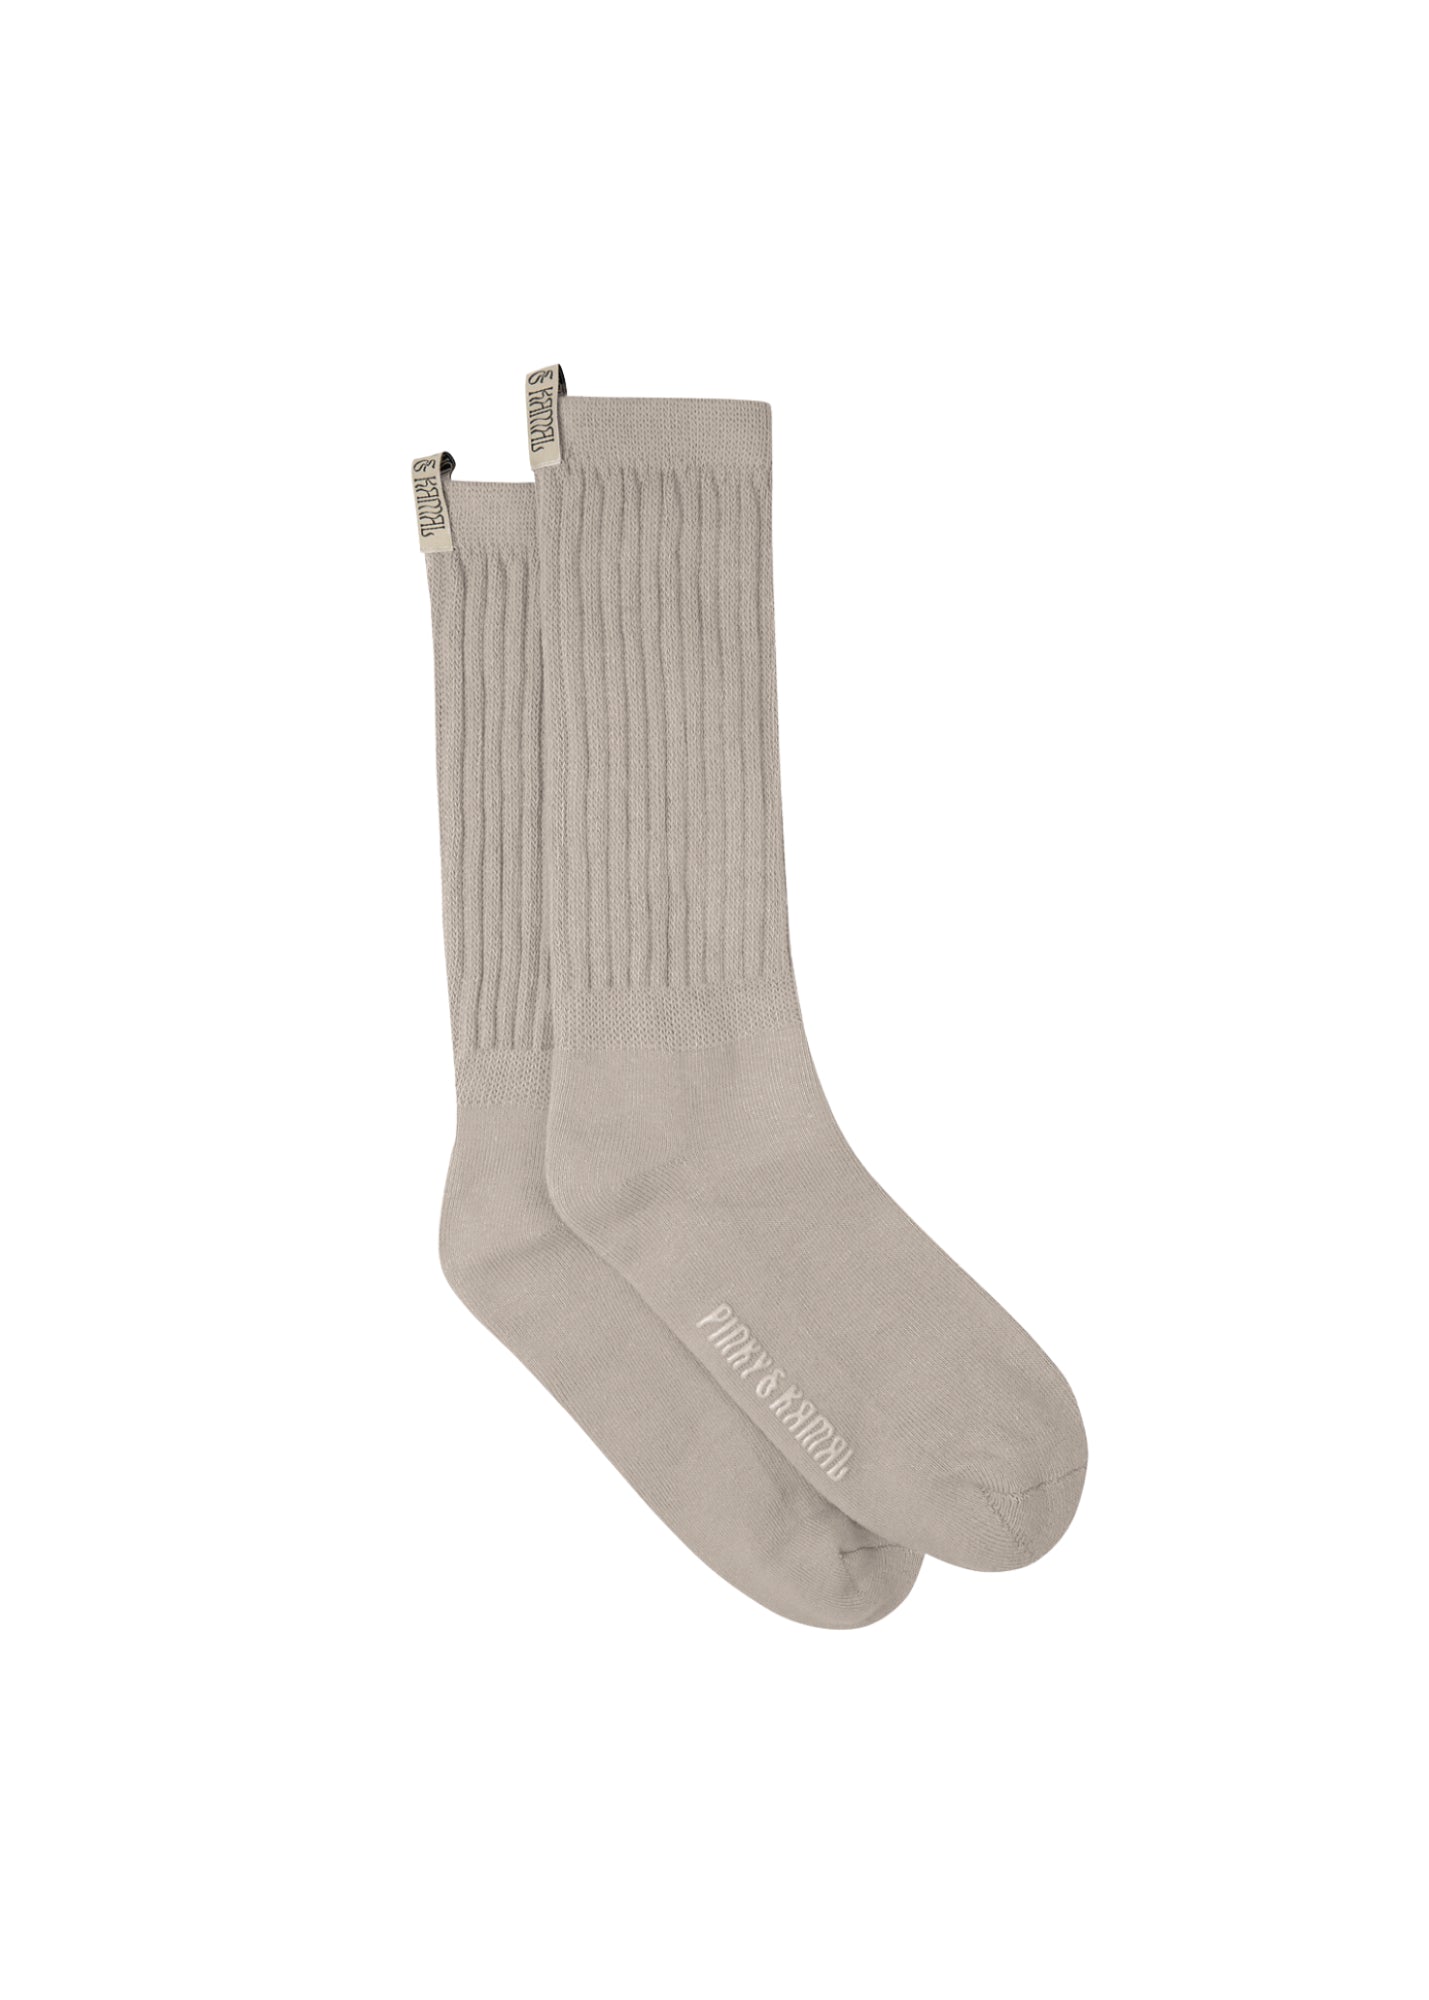 The Slouchy Sock LITE - Oat